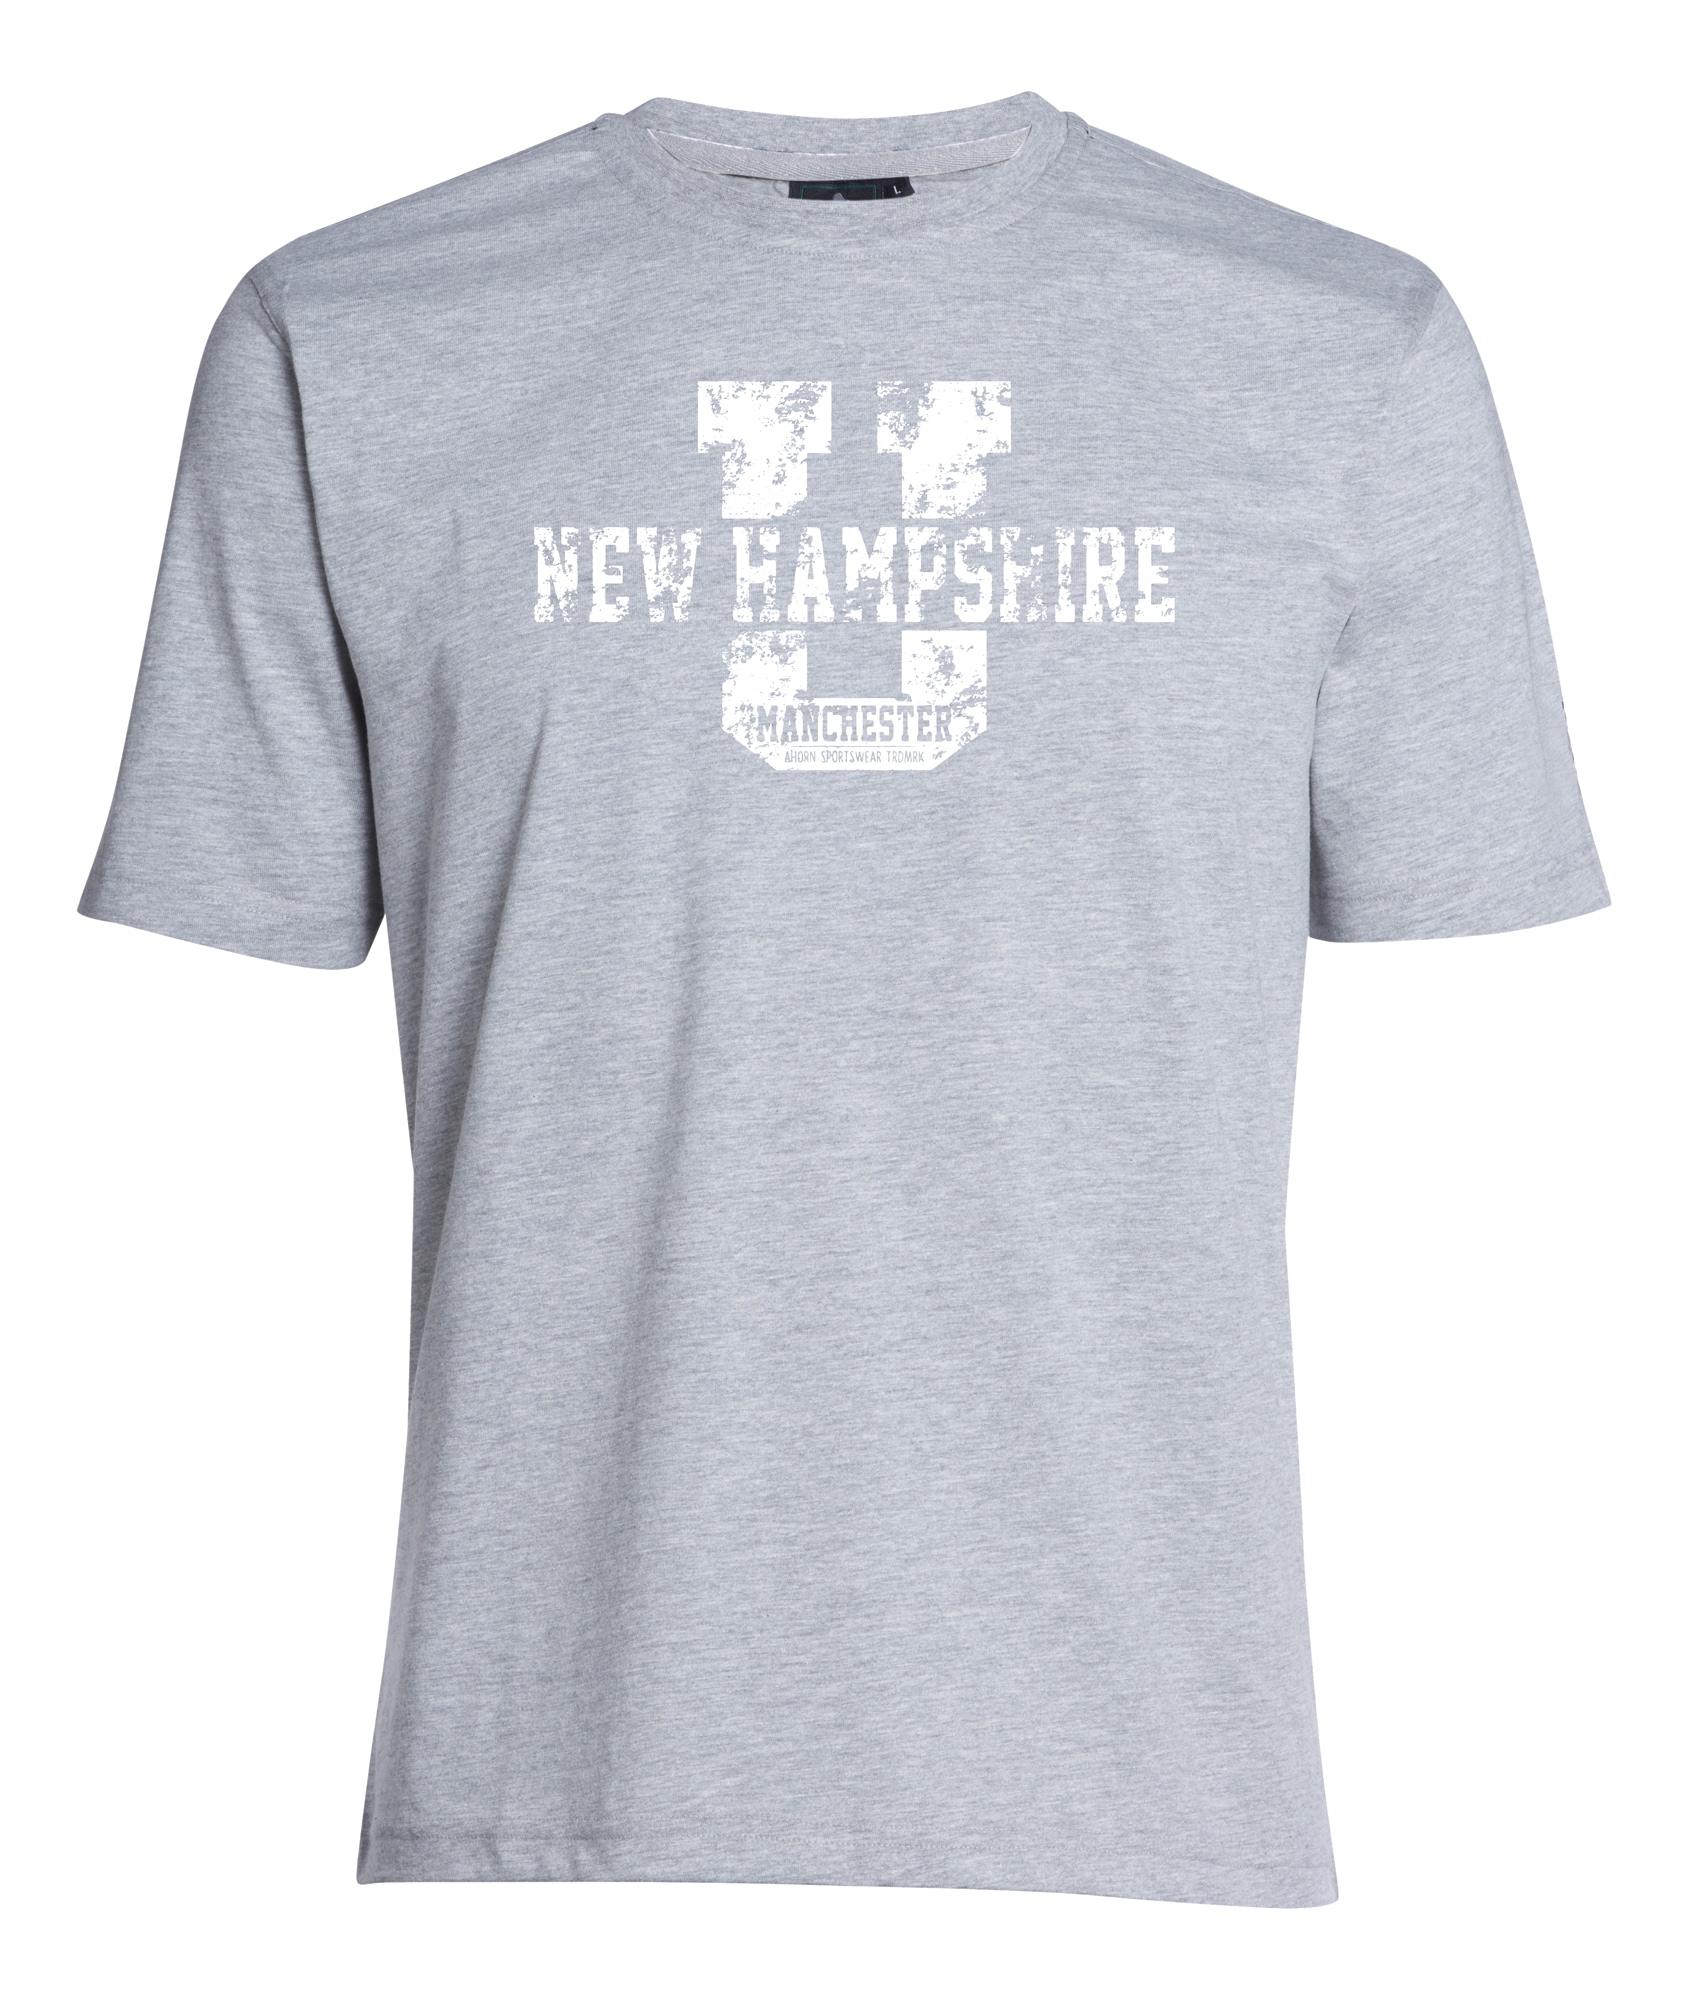 und HAMPSHIRE«, SPORTSWEAR T-Shirt BAUR | für ▷ AHORN »NEW großem Frontprint Strass-Steinchen mit